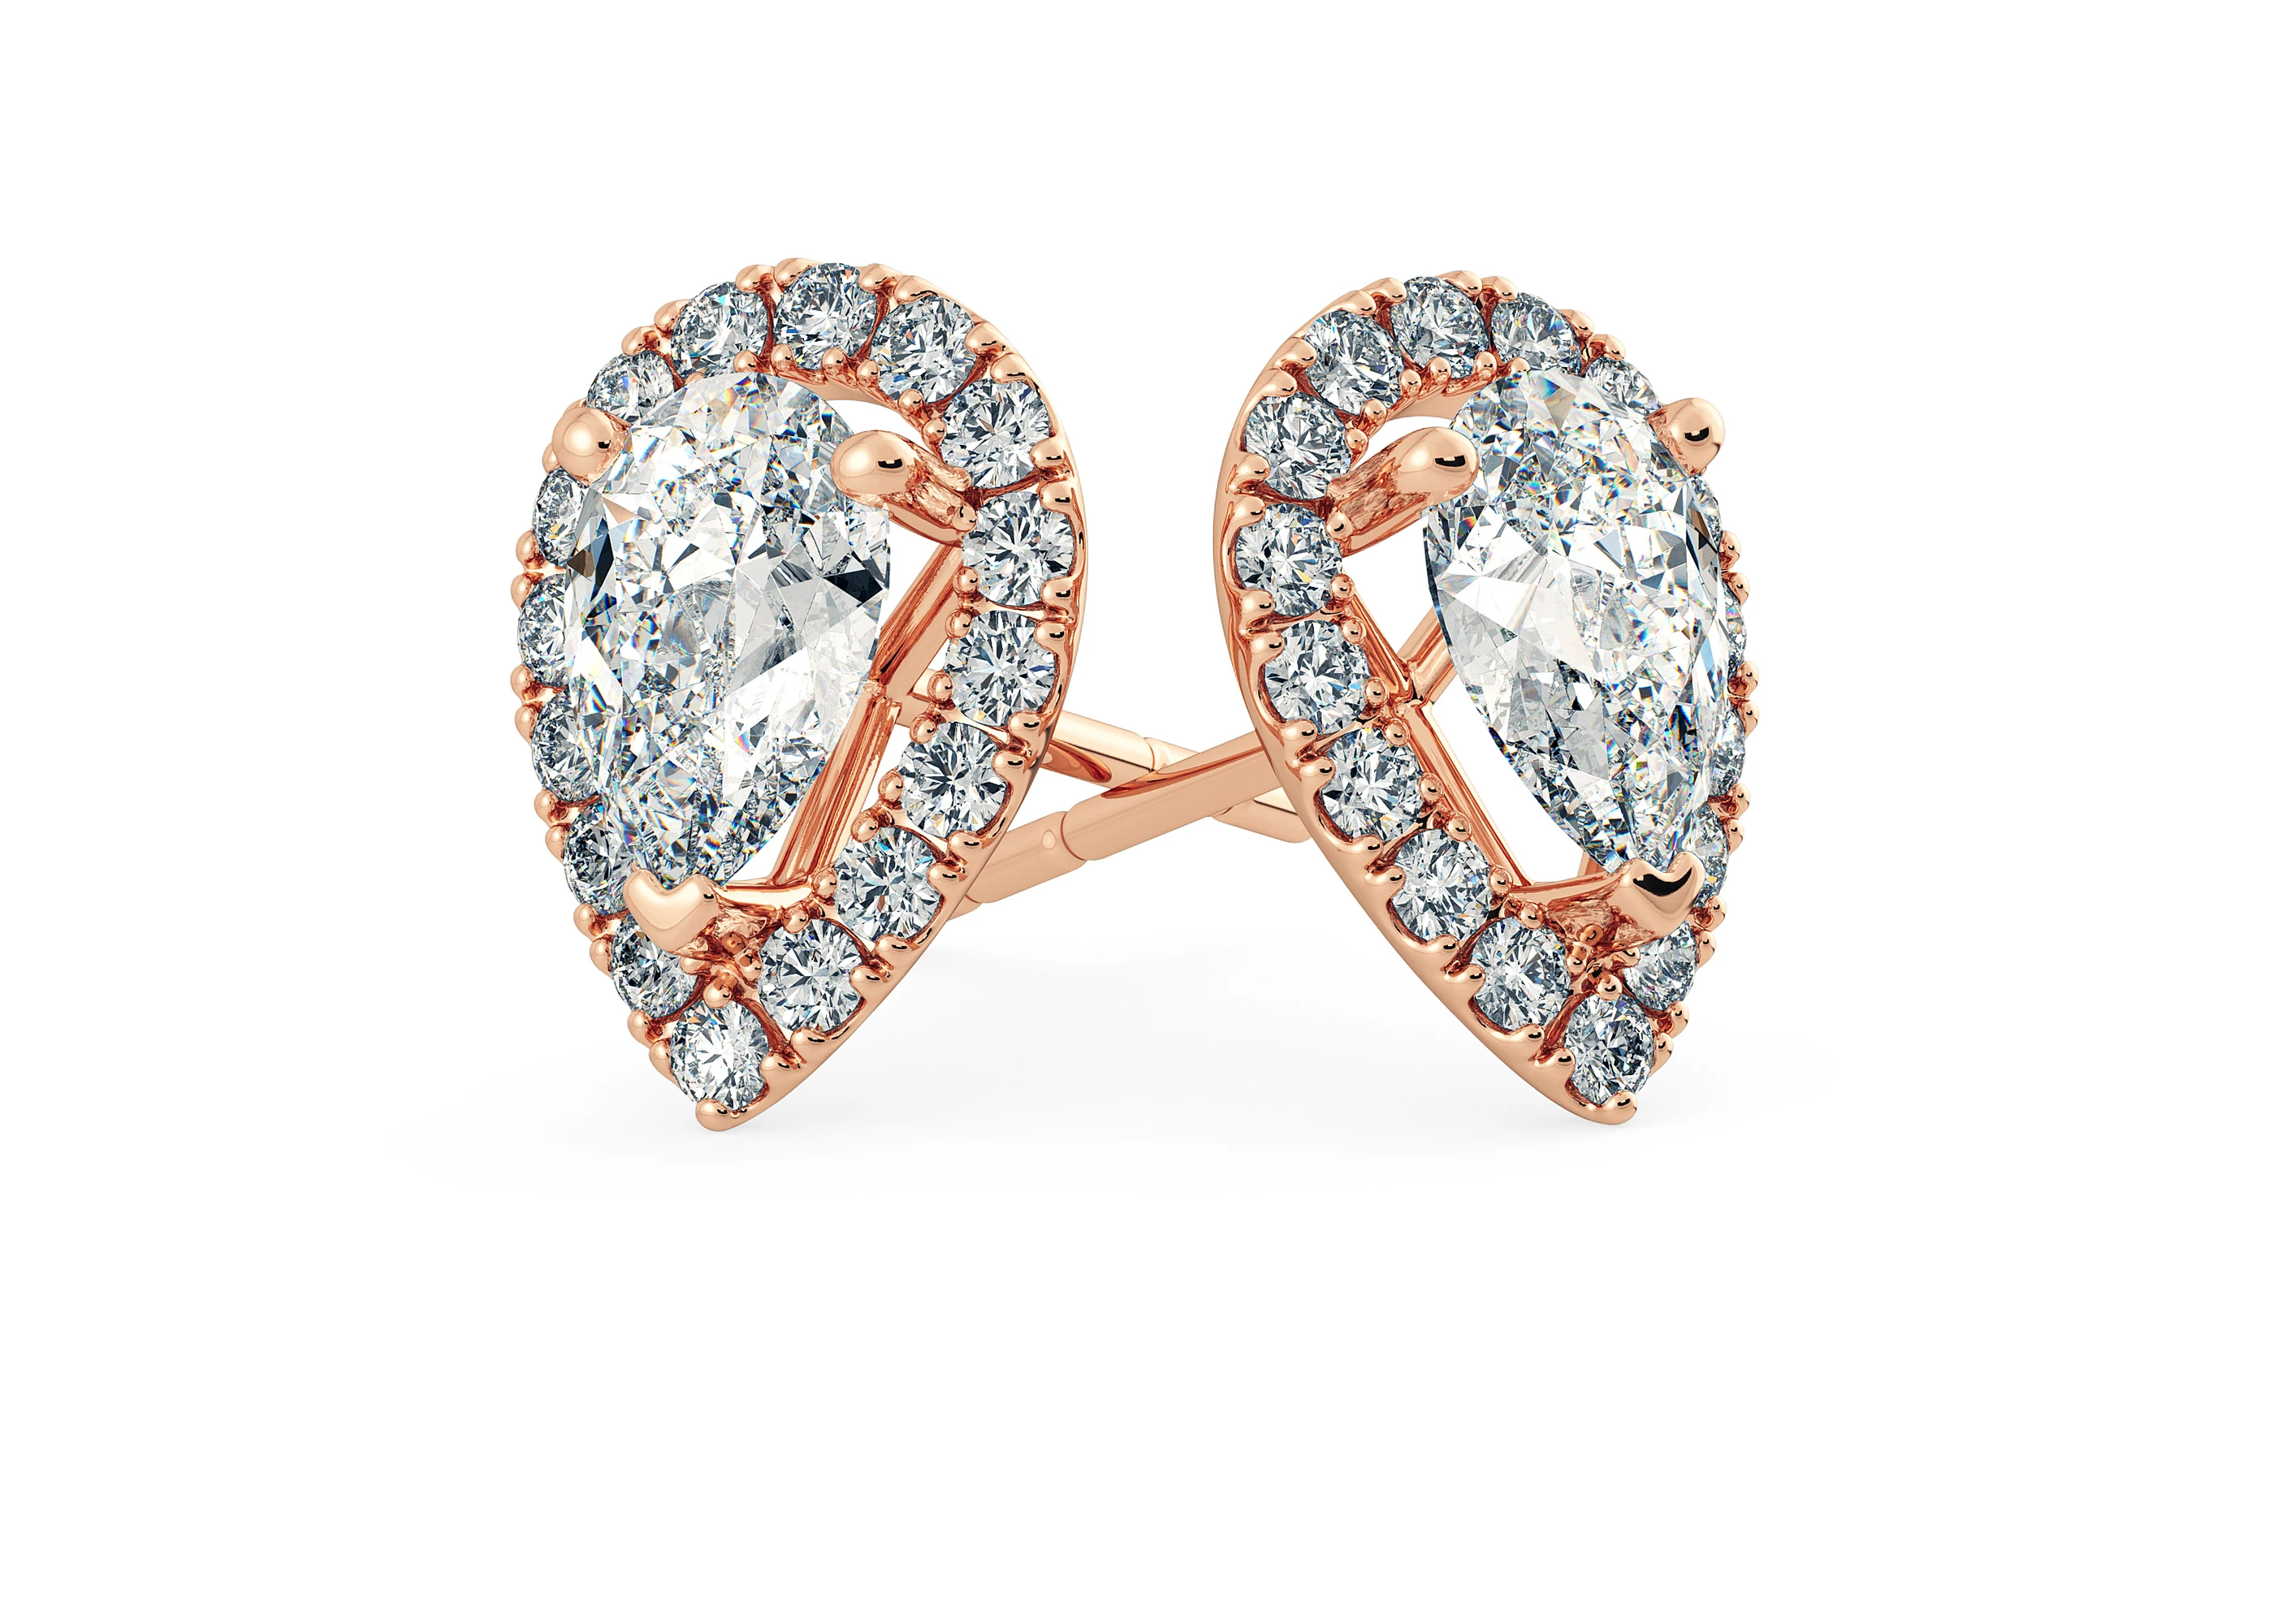 Bijou Pear Diamond Stud Earrings in 18K Rose Gold with Butterfly Backs